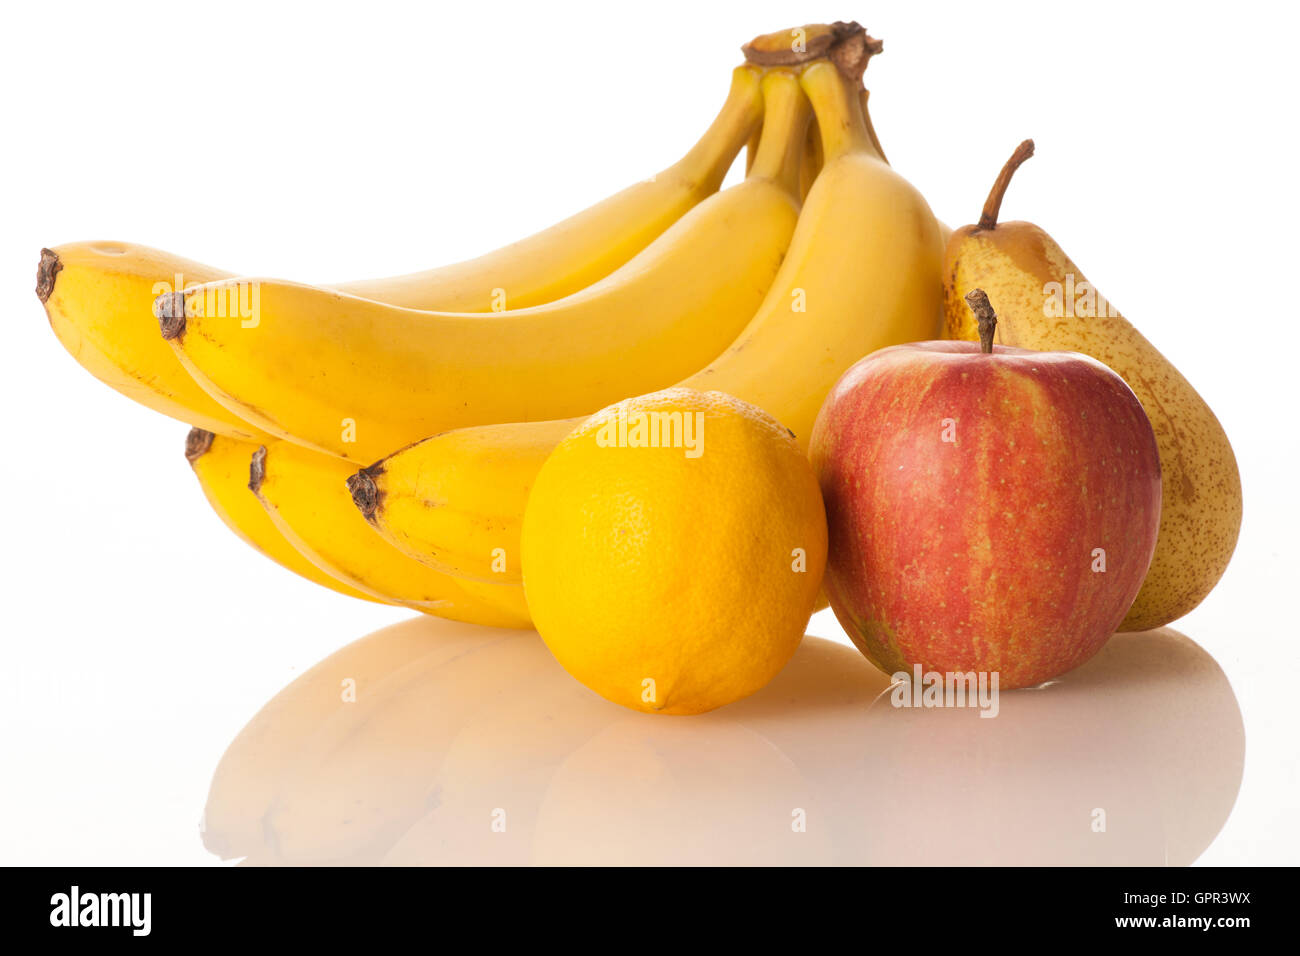 Fruits frais bananes citron pomme et poire isolated over white Banque D'Images